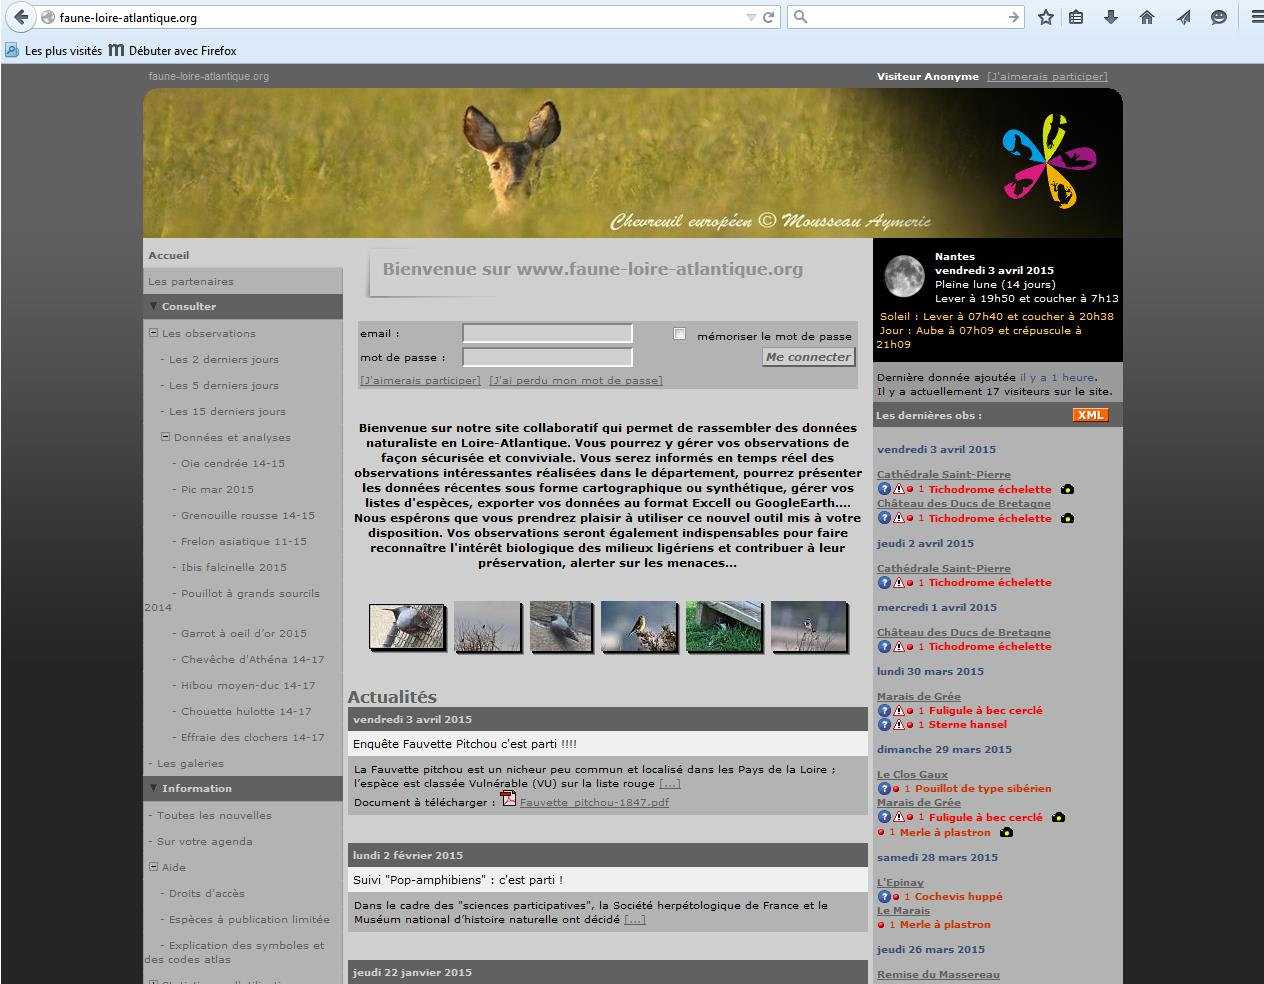 1) S'inscrire : Lors de votre première visite sur le site www.faune-loire-atlantique.